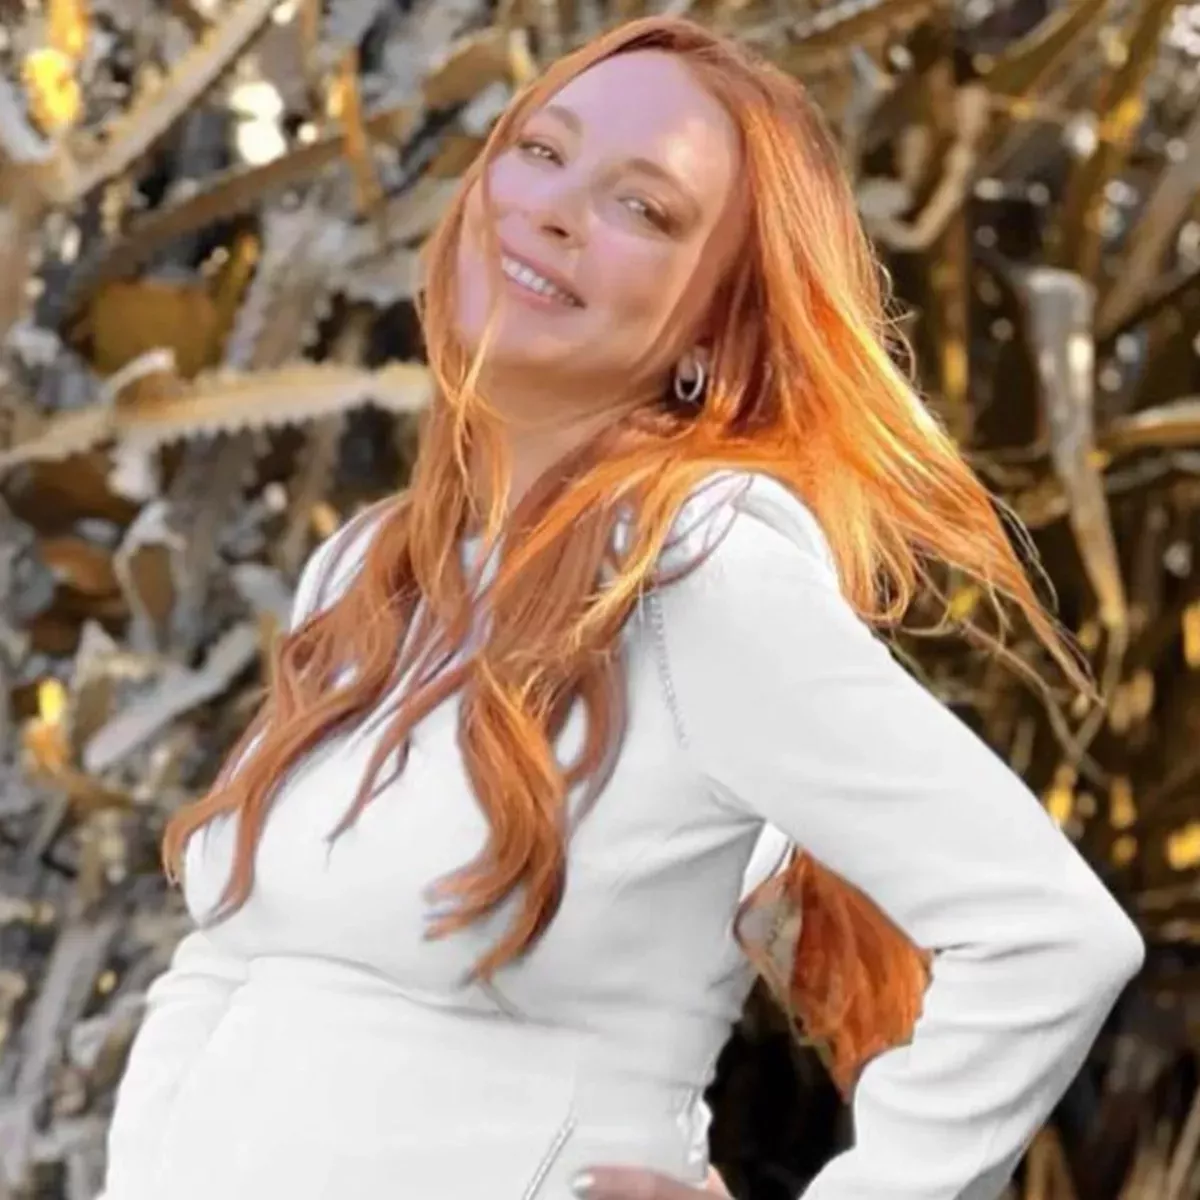 Lindsay Lohan, embarazada, comparte un nuevo selfie mientras celebra su 37 cumpleaños